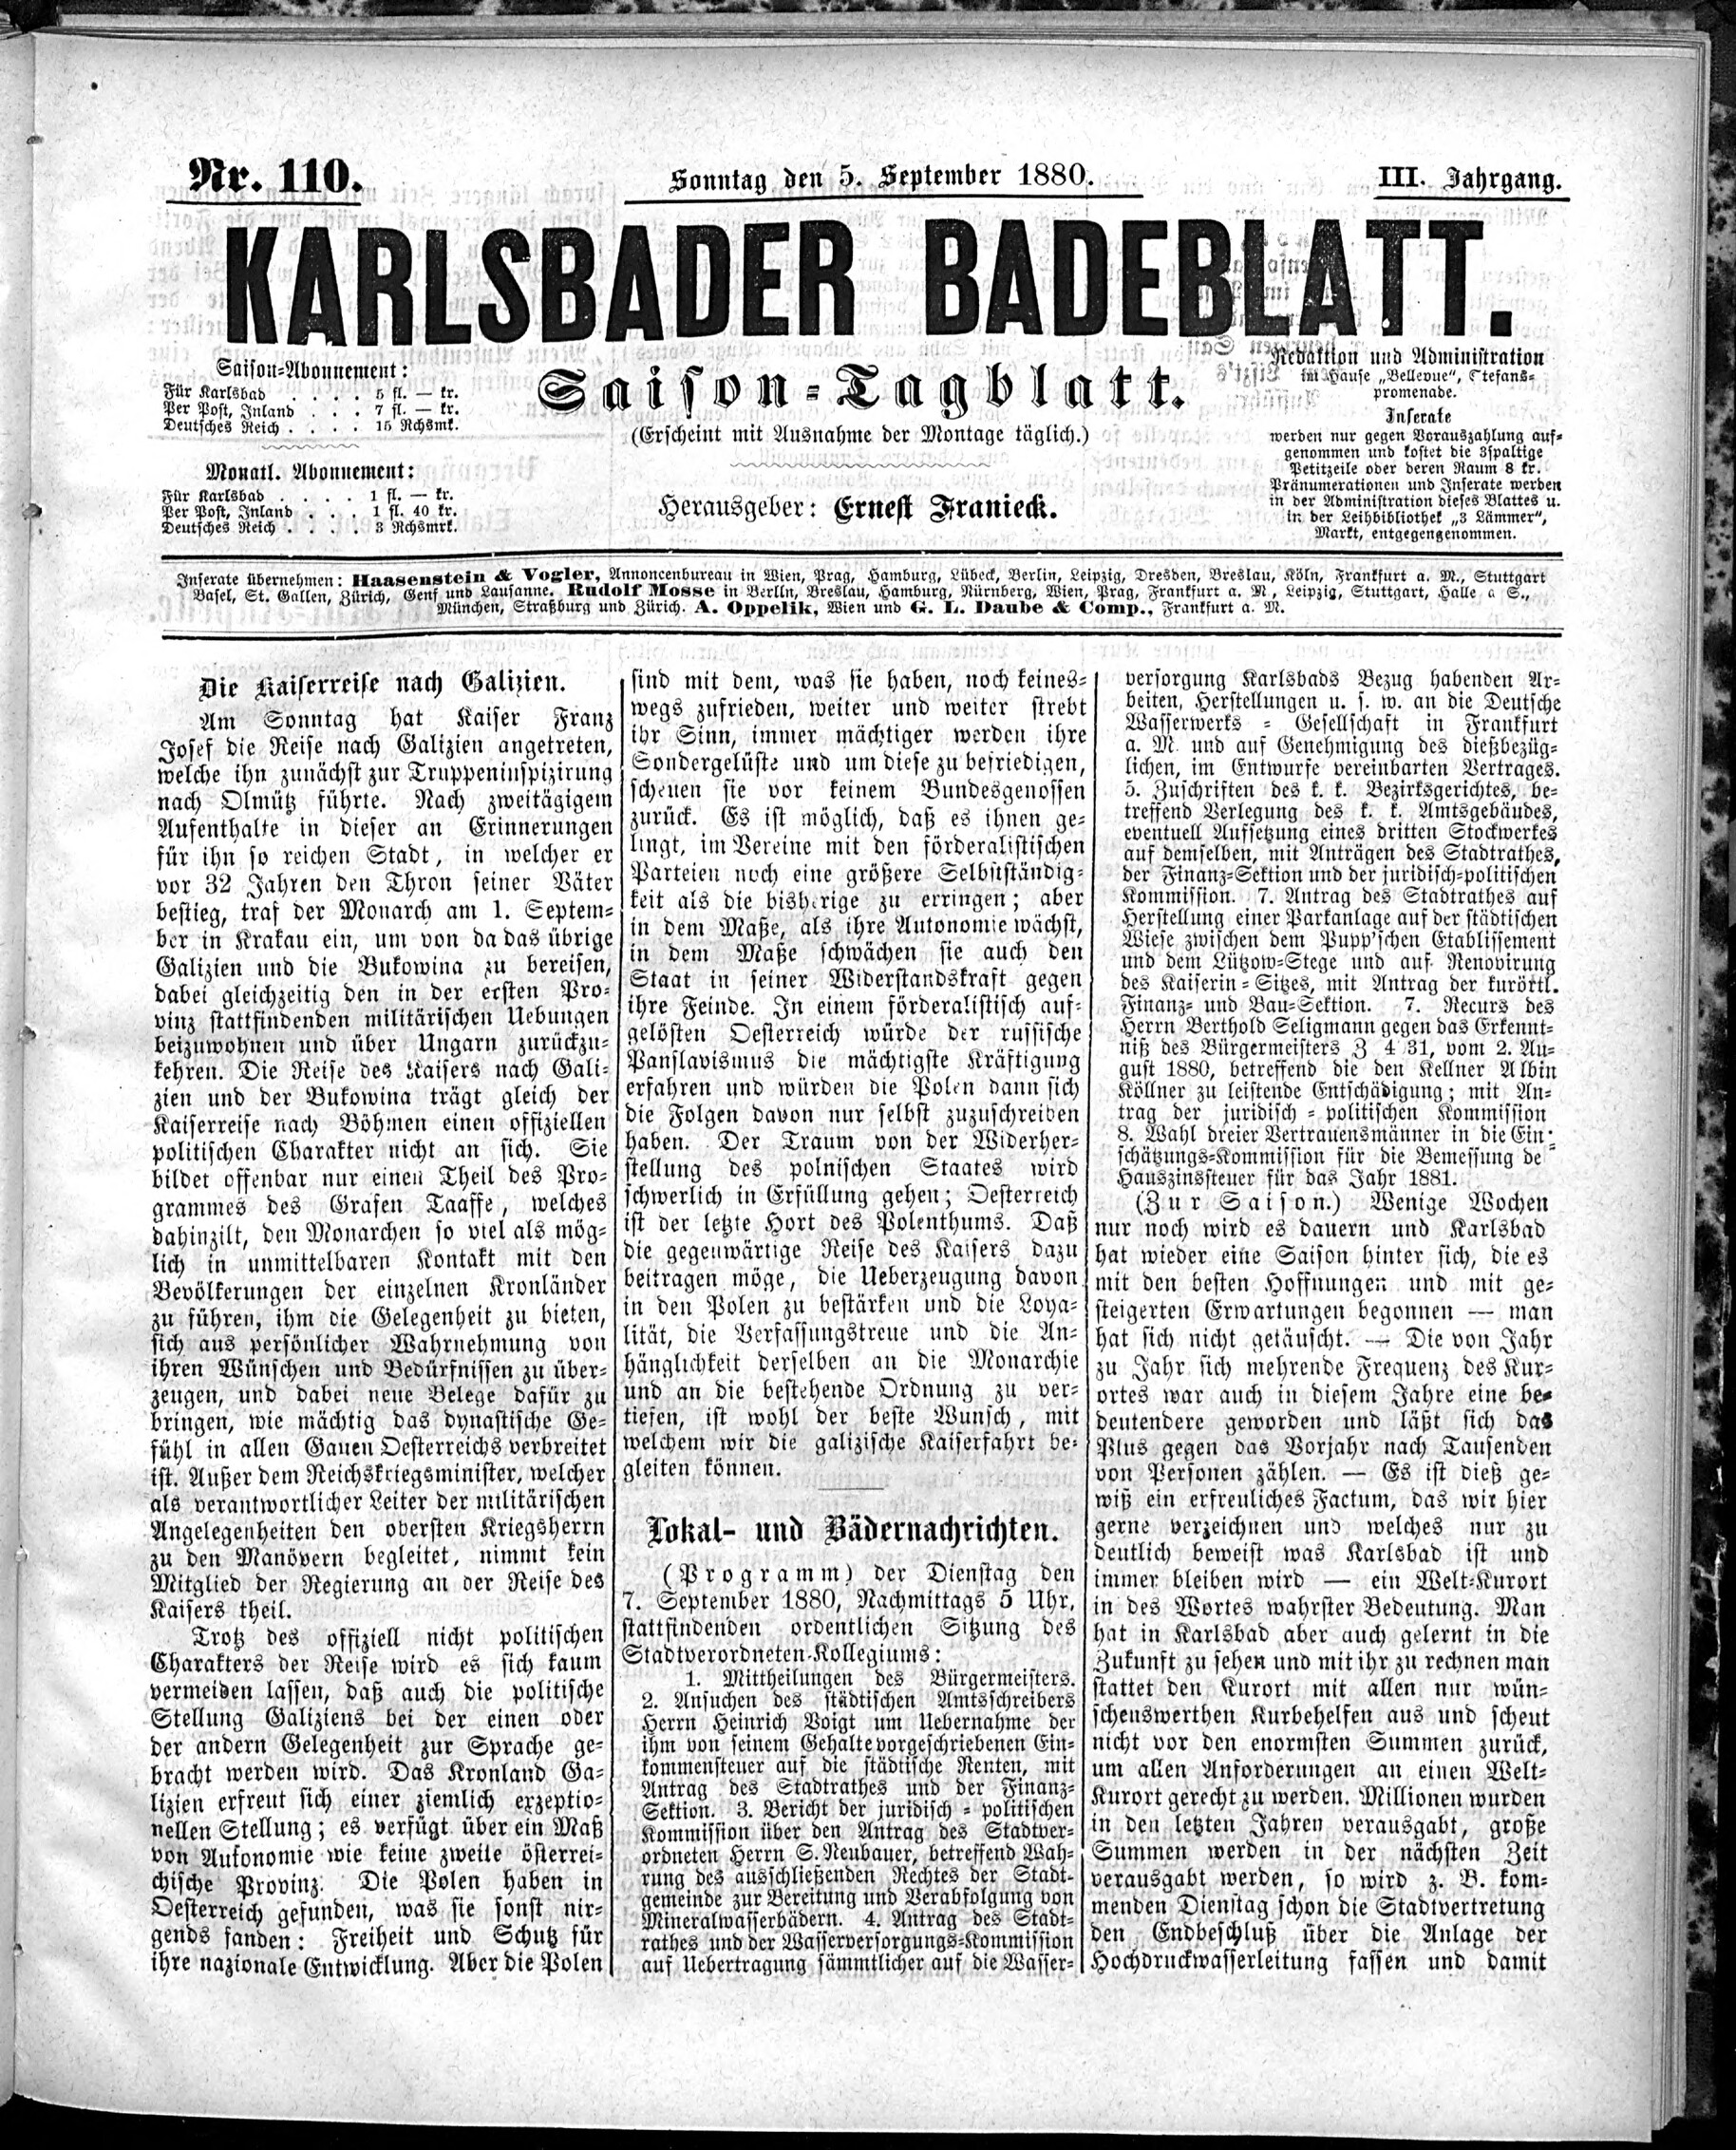 1. karlsbader-badeblatt-1880-09-05-n110_2225